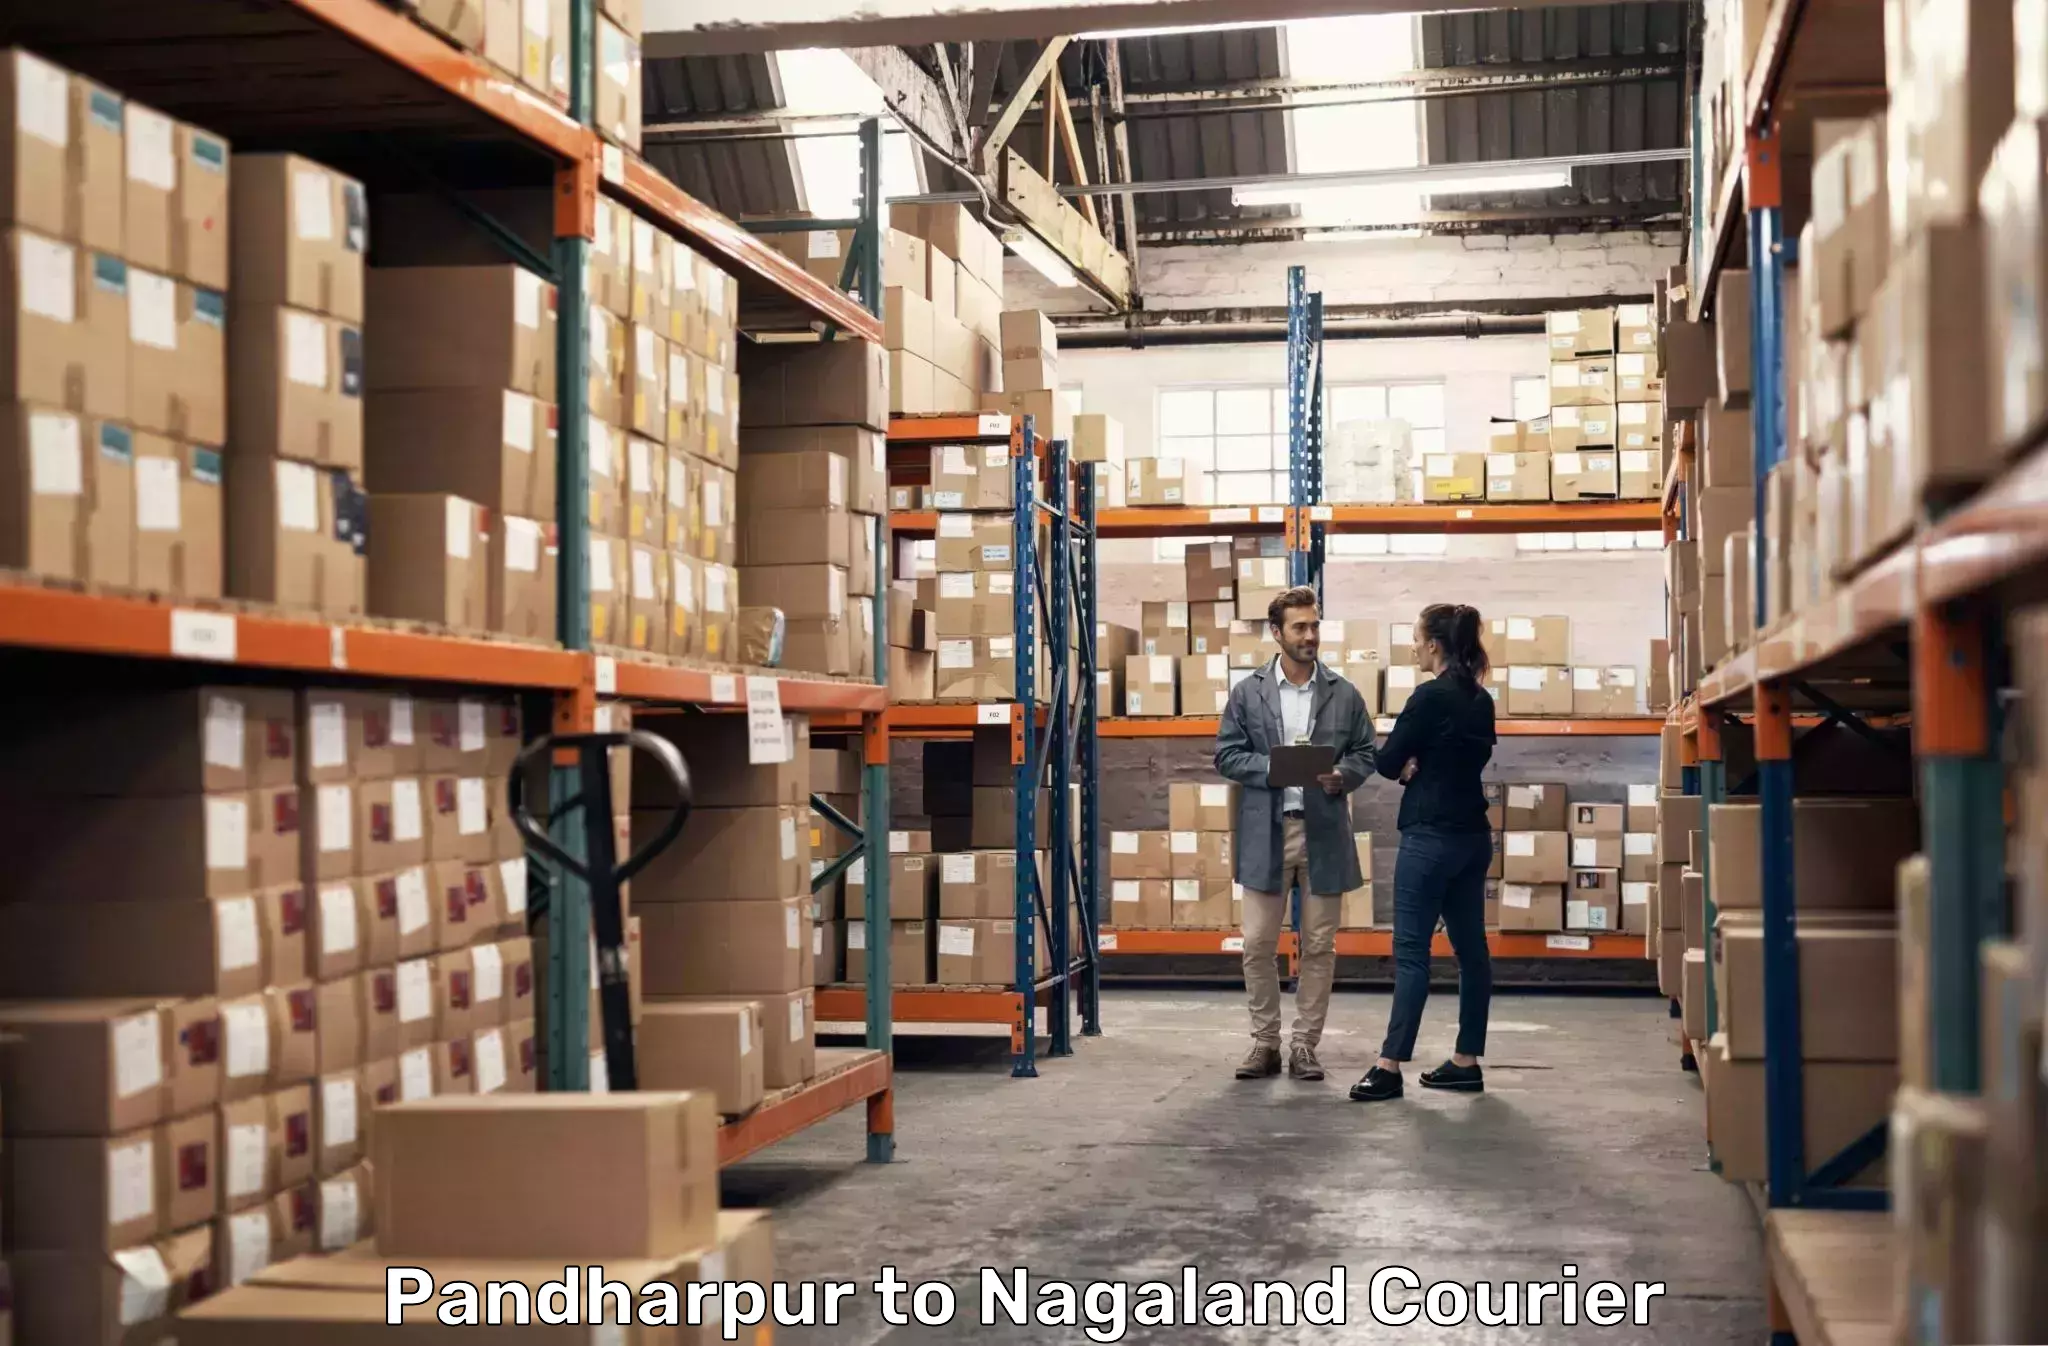 Express courier facilities Pandharpur to NIT Nagaland